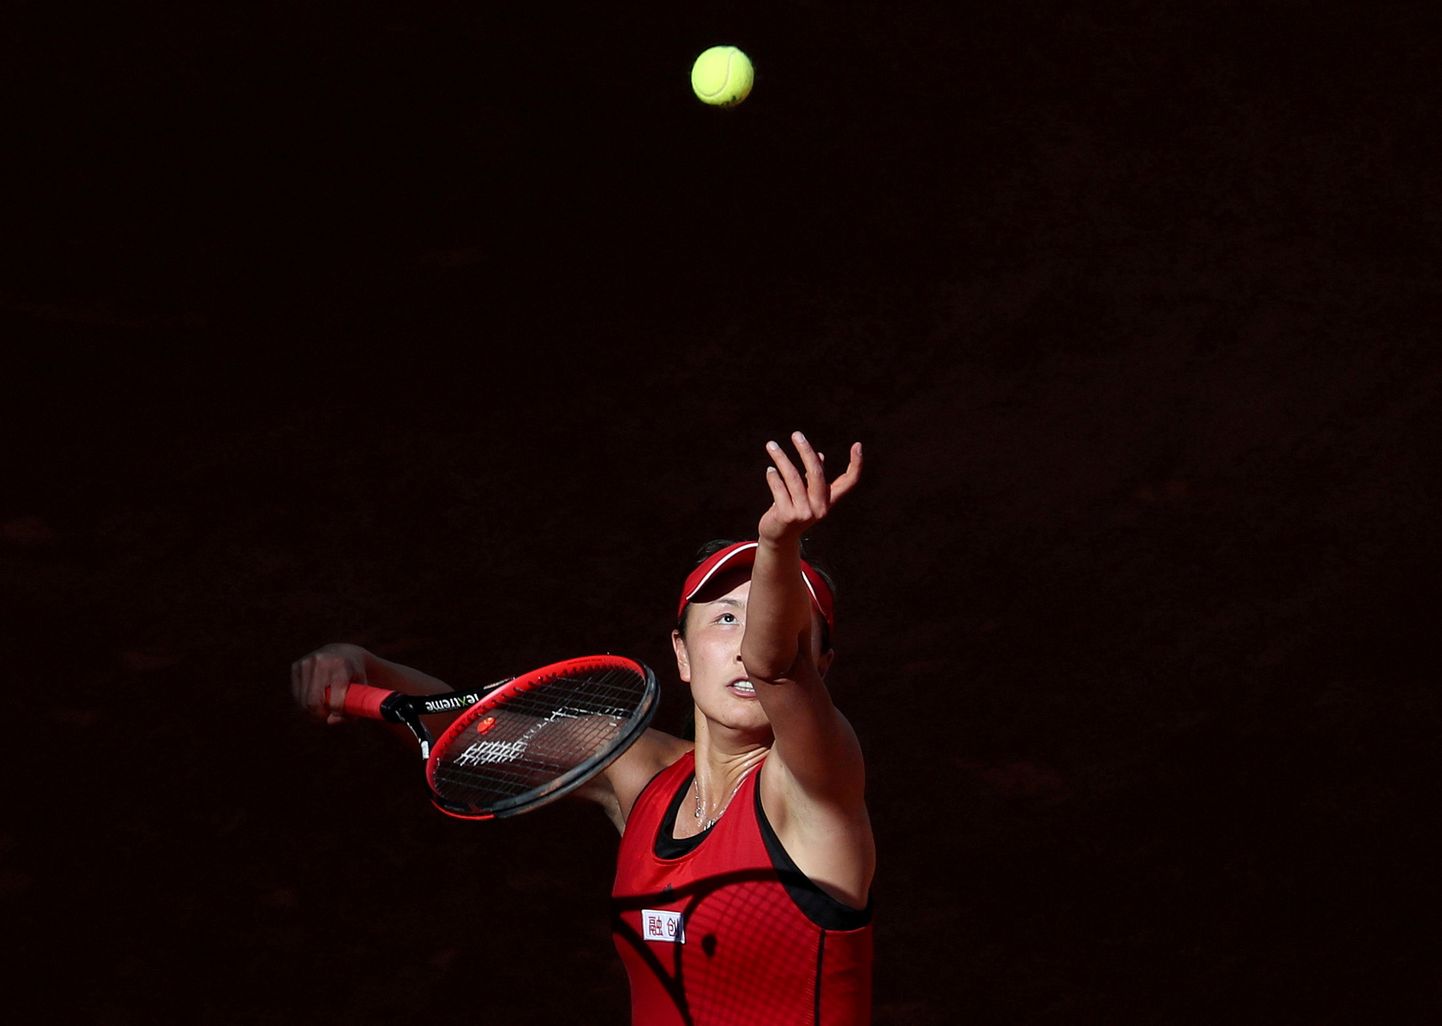 Китайская теннисистка Пэн Шуай.